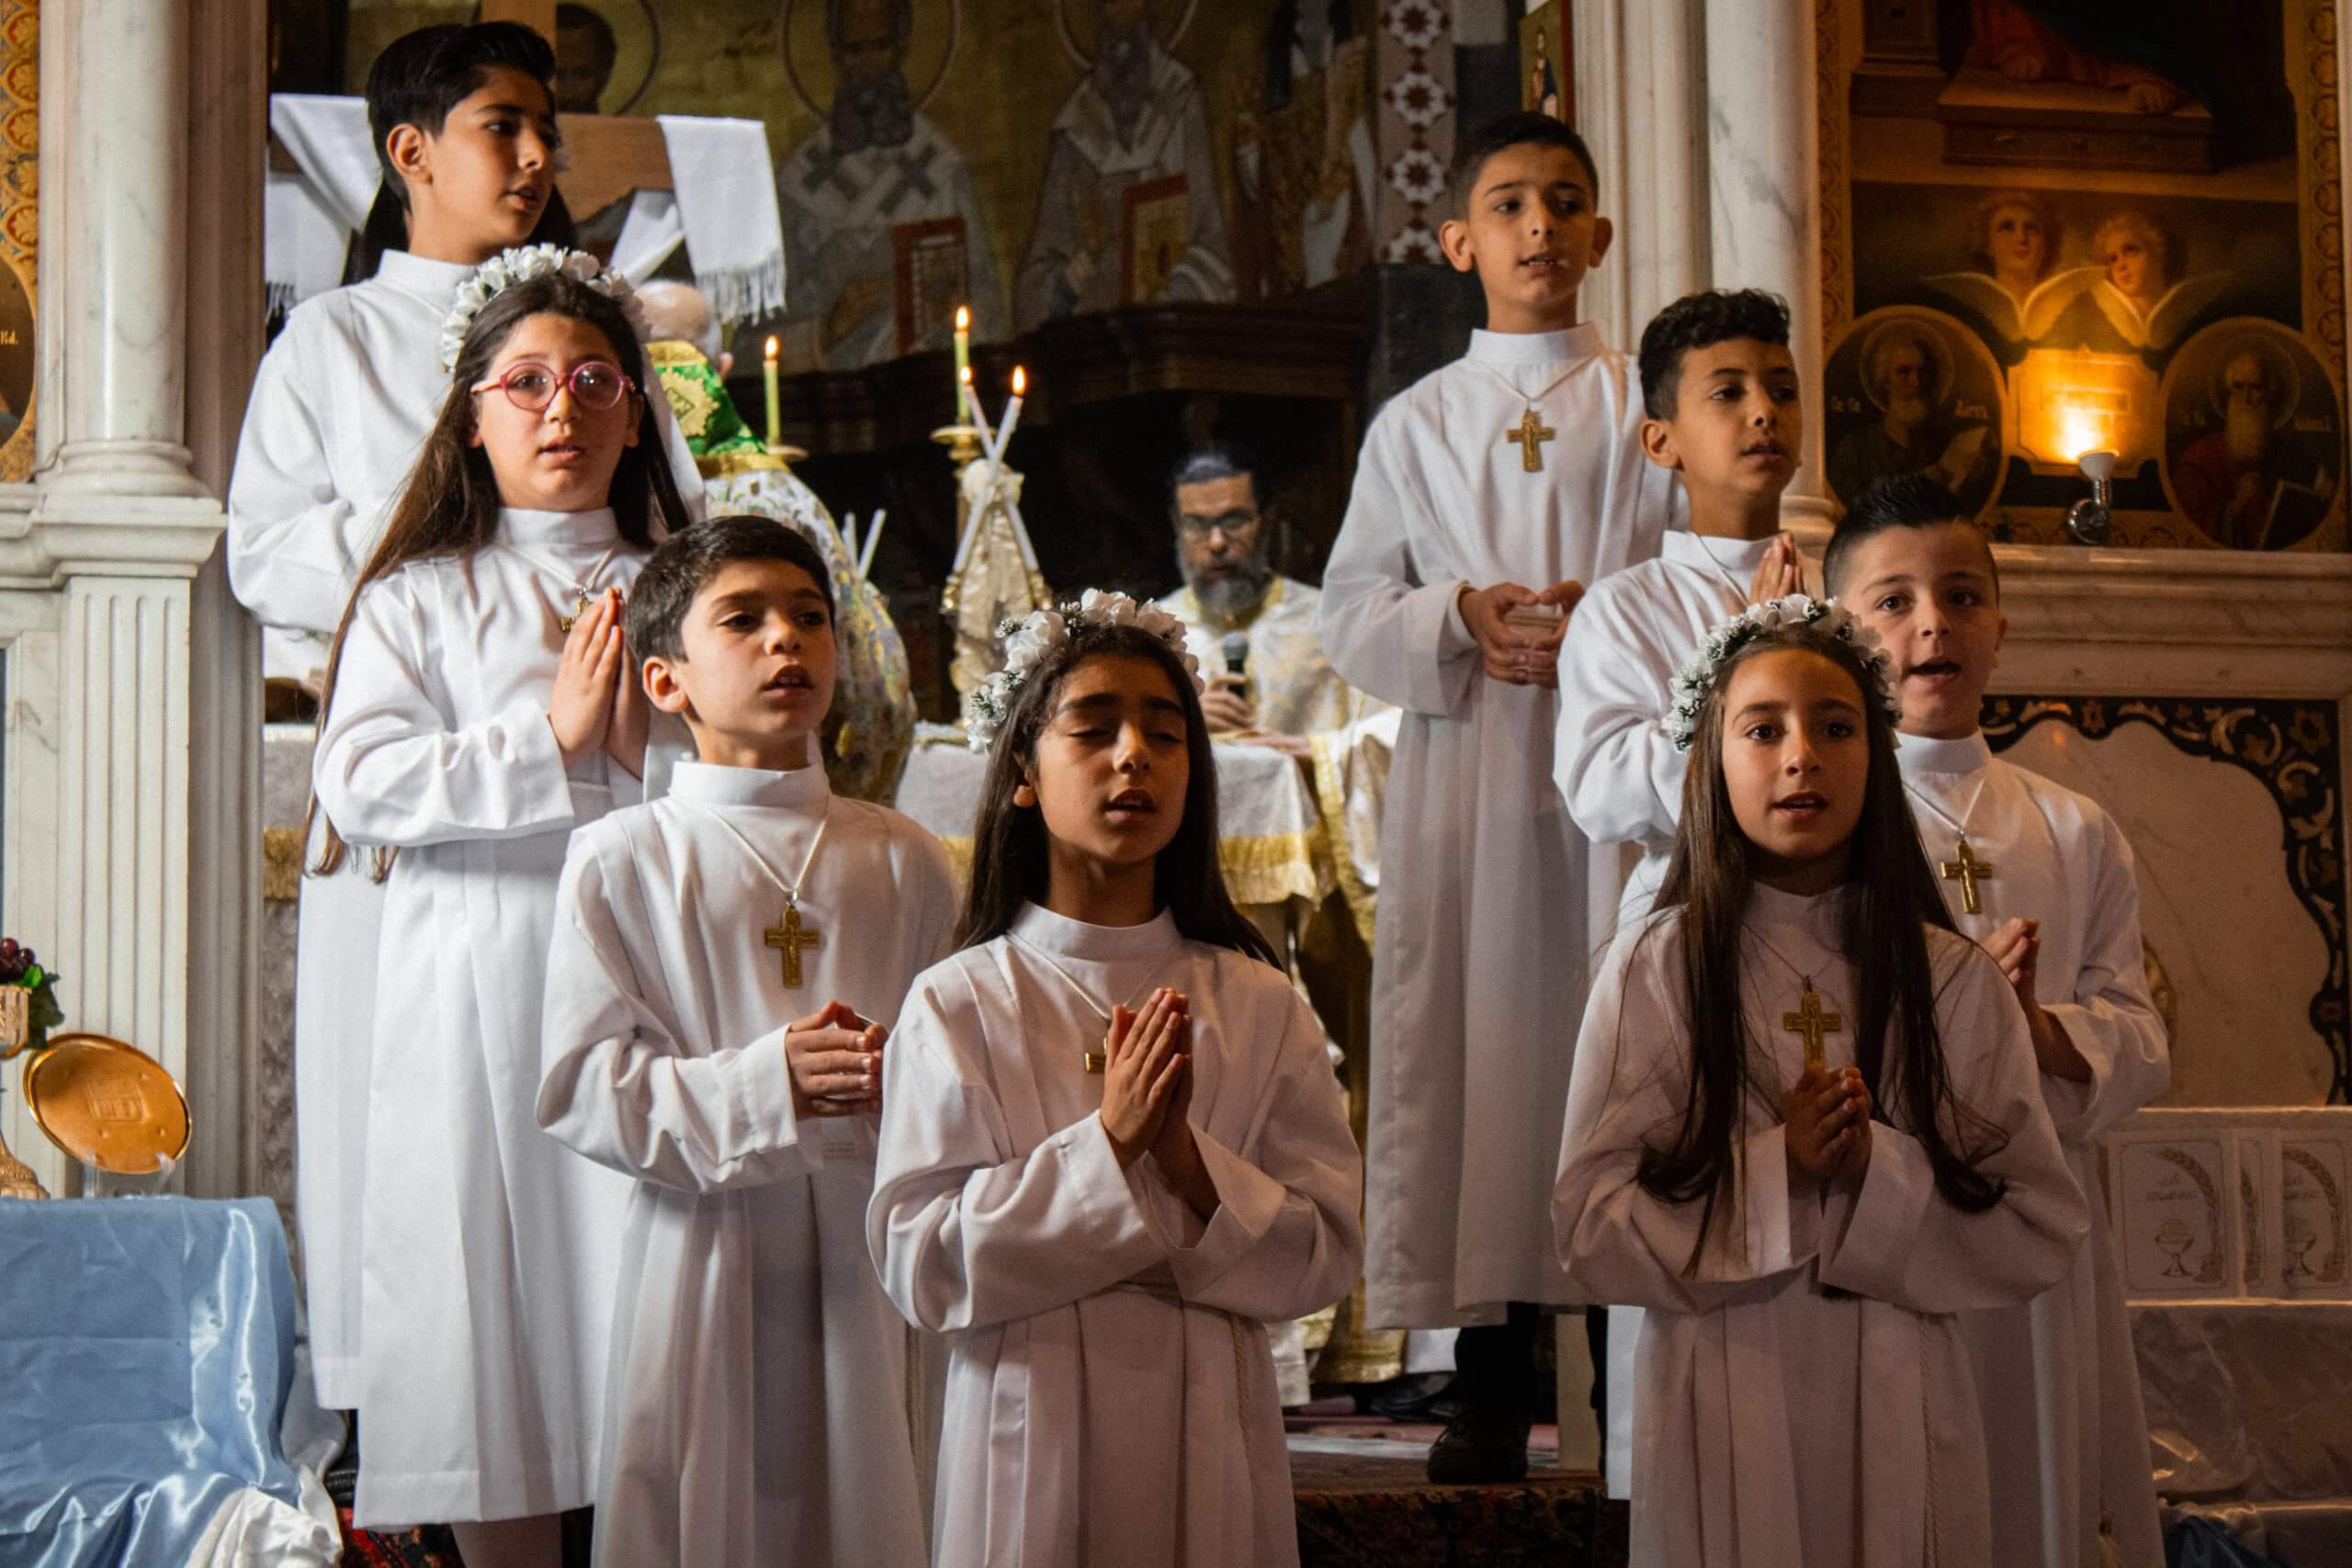 sos-chertiens-orient-enfants-syriens-premiere-communion-scaled